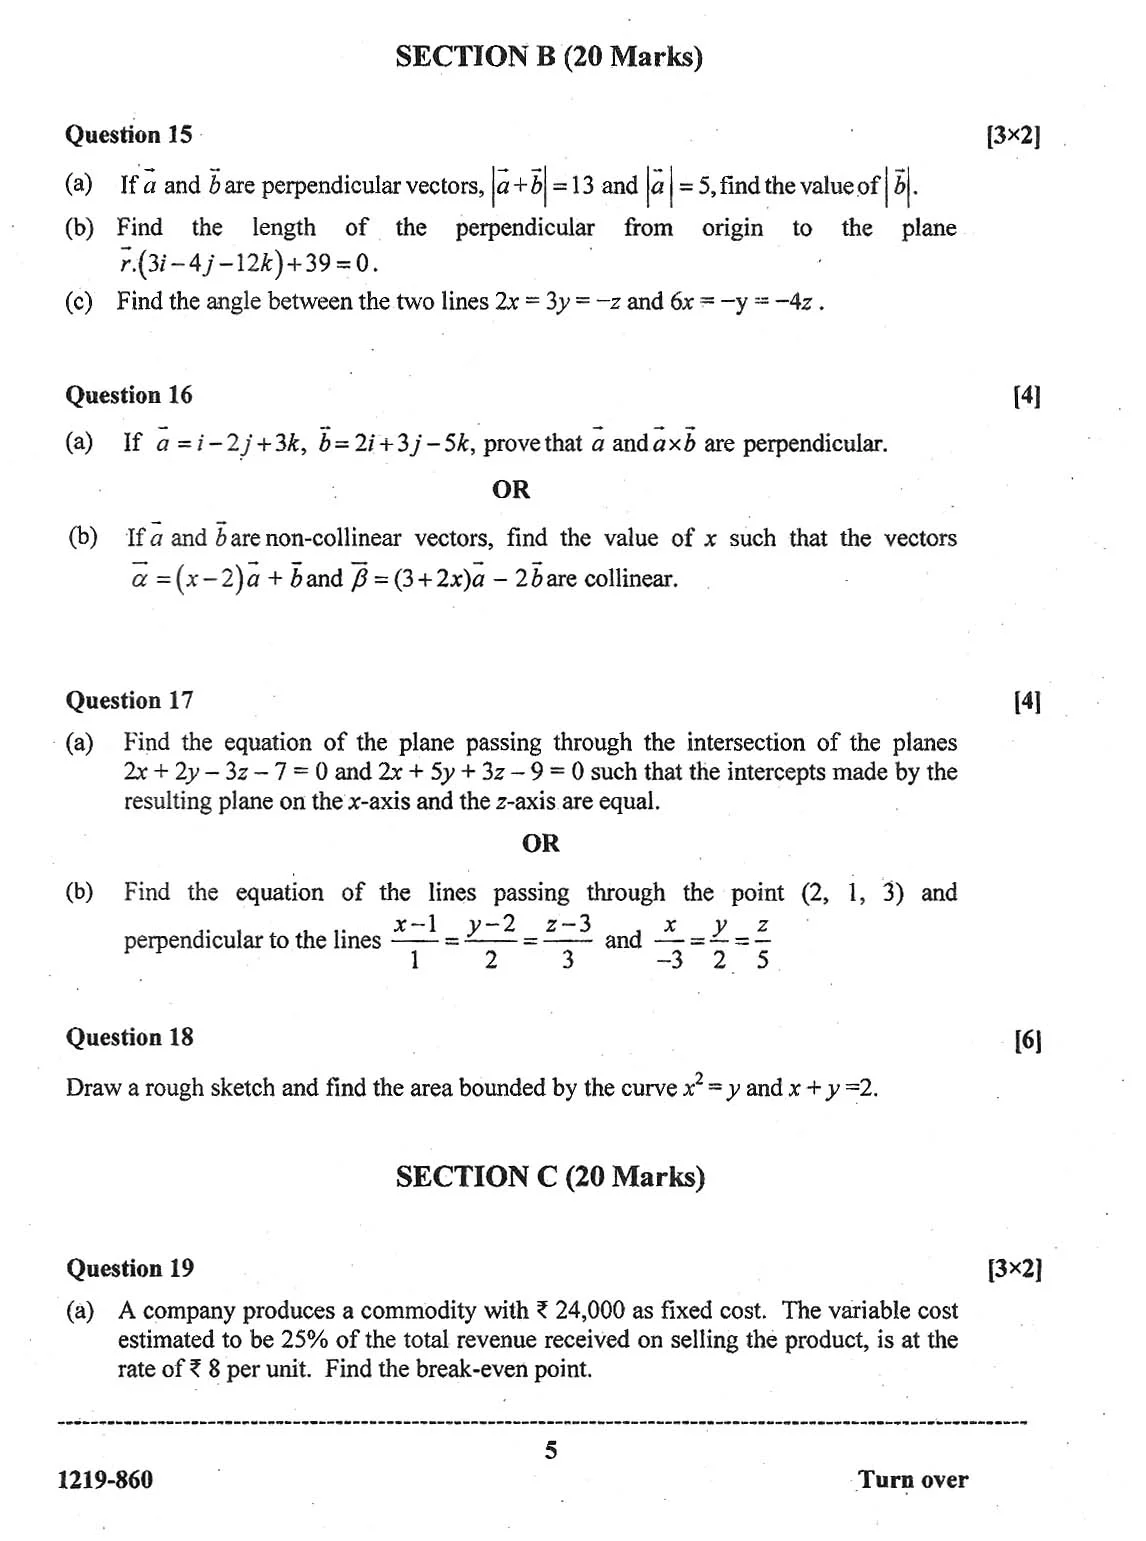 ISC Class 12 Mathematics 2019 Question Paper